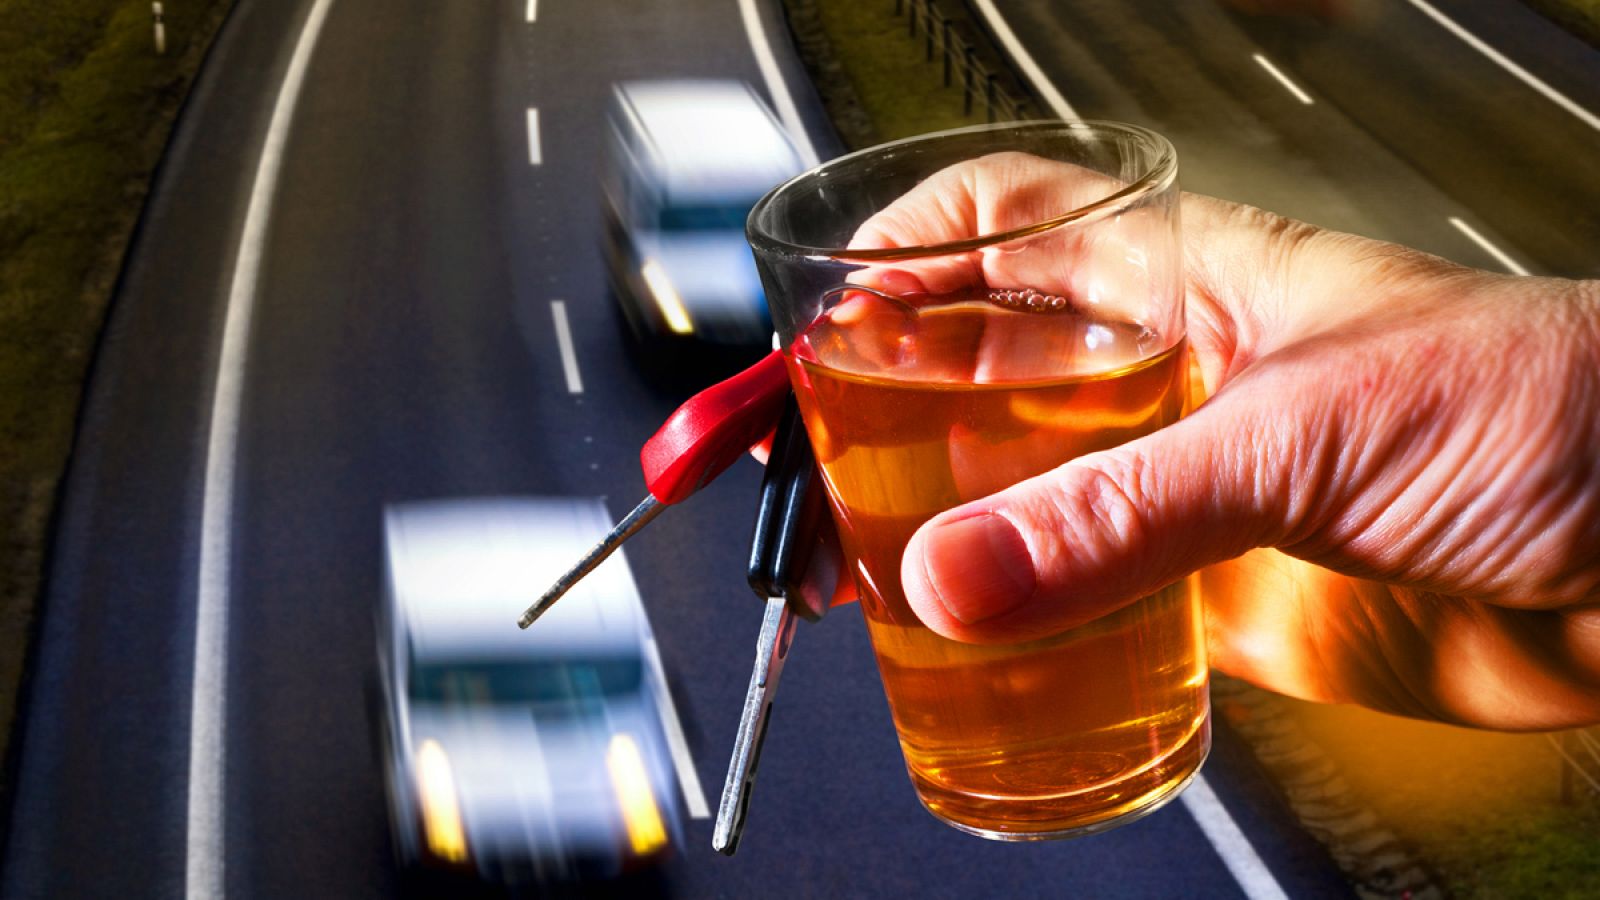 Entre las personas fallecidas por accidente de coche, la principal incidencia fue el alcohol